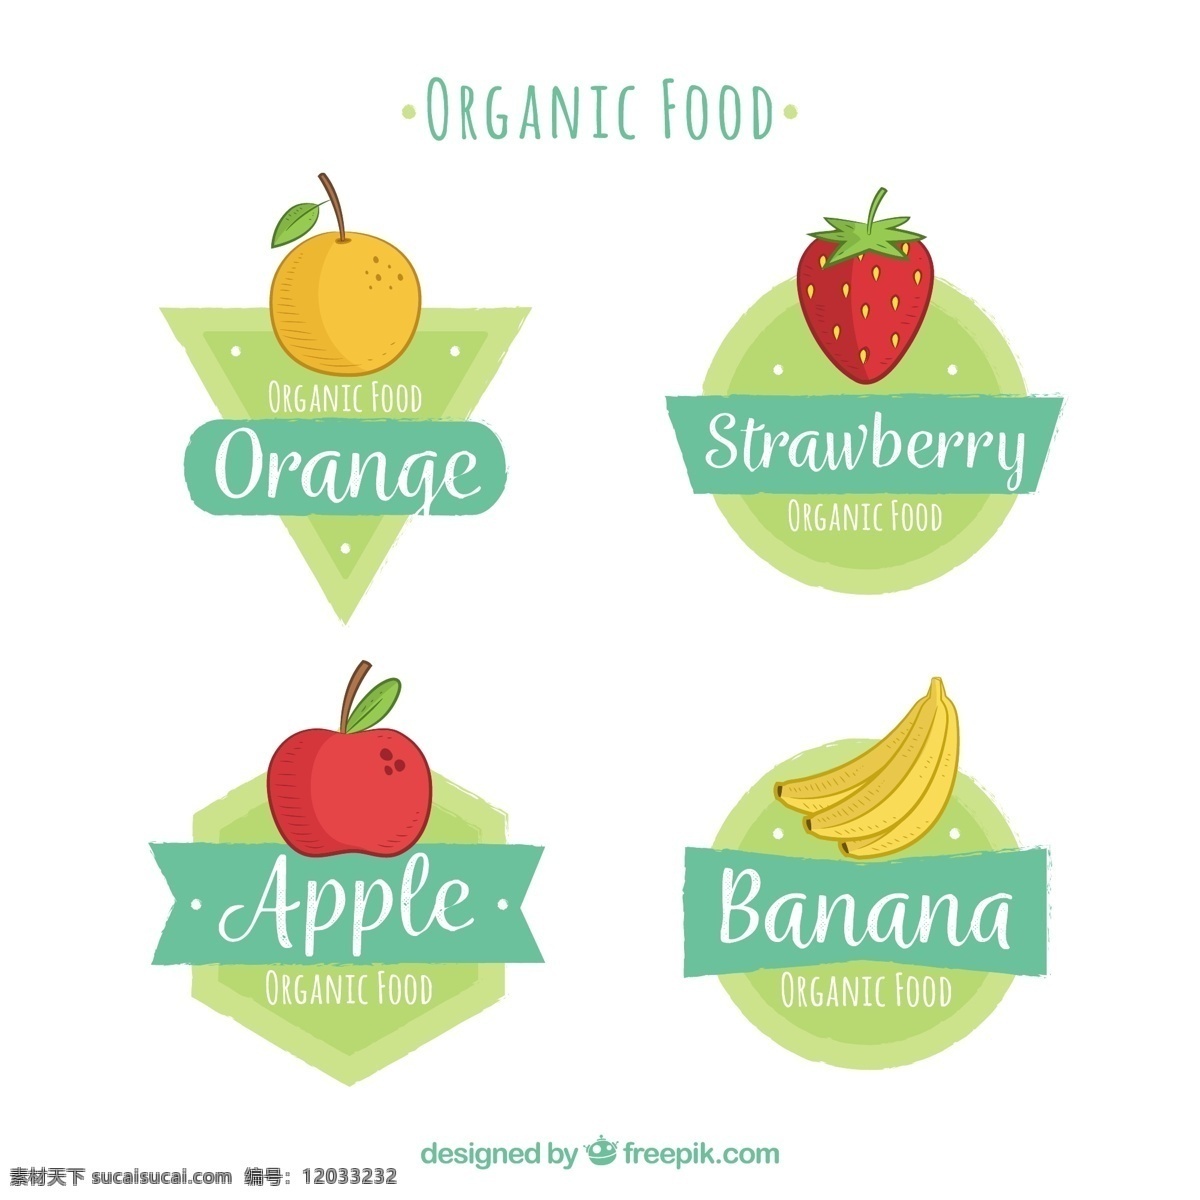 彩色 手绘 生态 食品 水果 贴纸 图标 生态食品 贴纸图标 橙子 草莓 苹果 香蕉 蓝色飘带 绿色背景